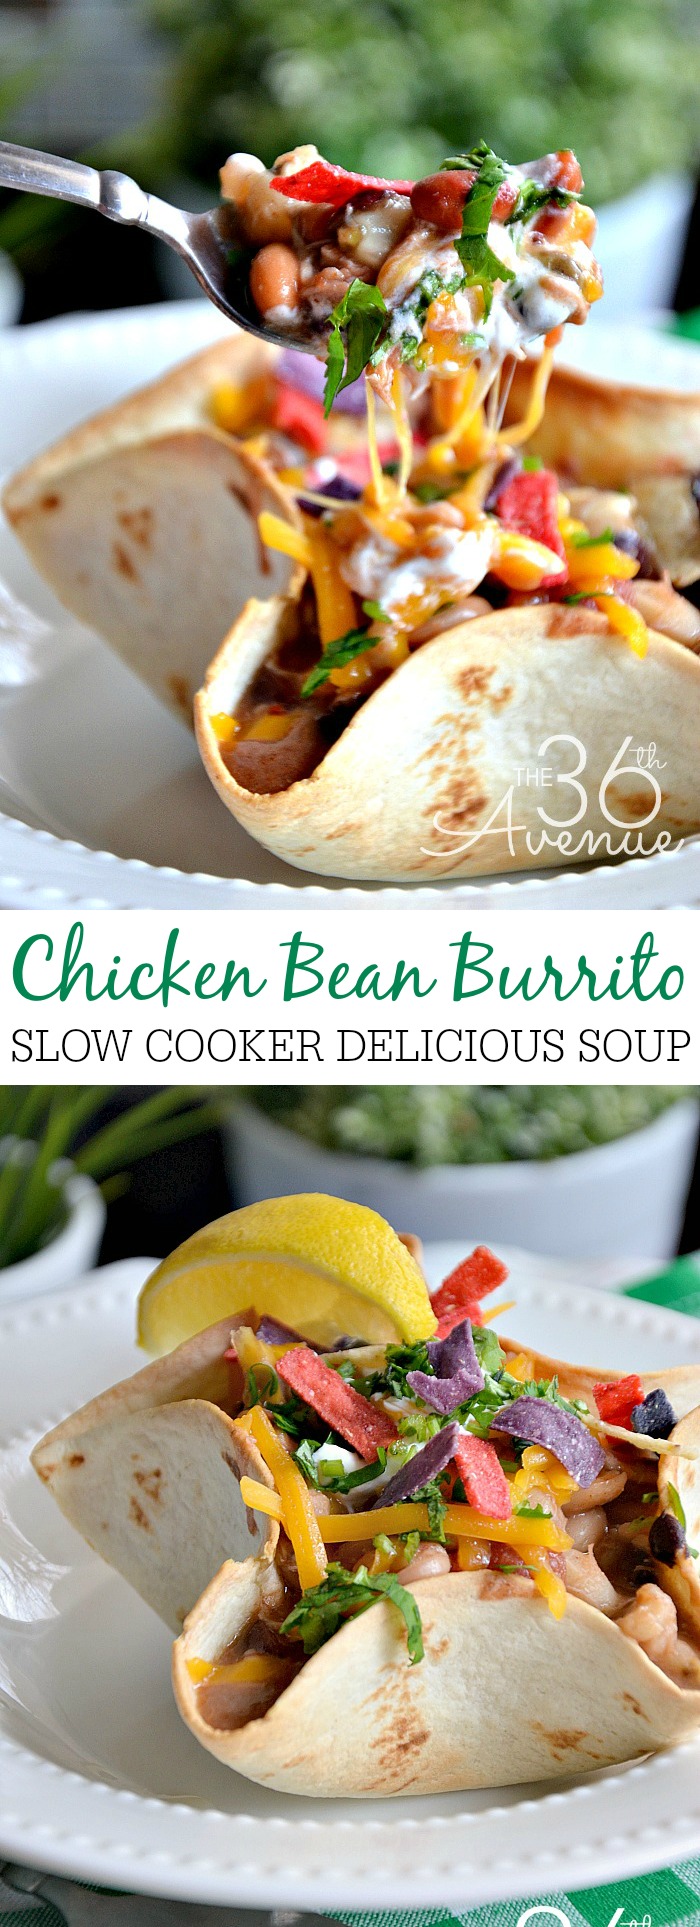 Chicken Bean Burrito Soup the36thavenue.com